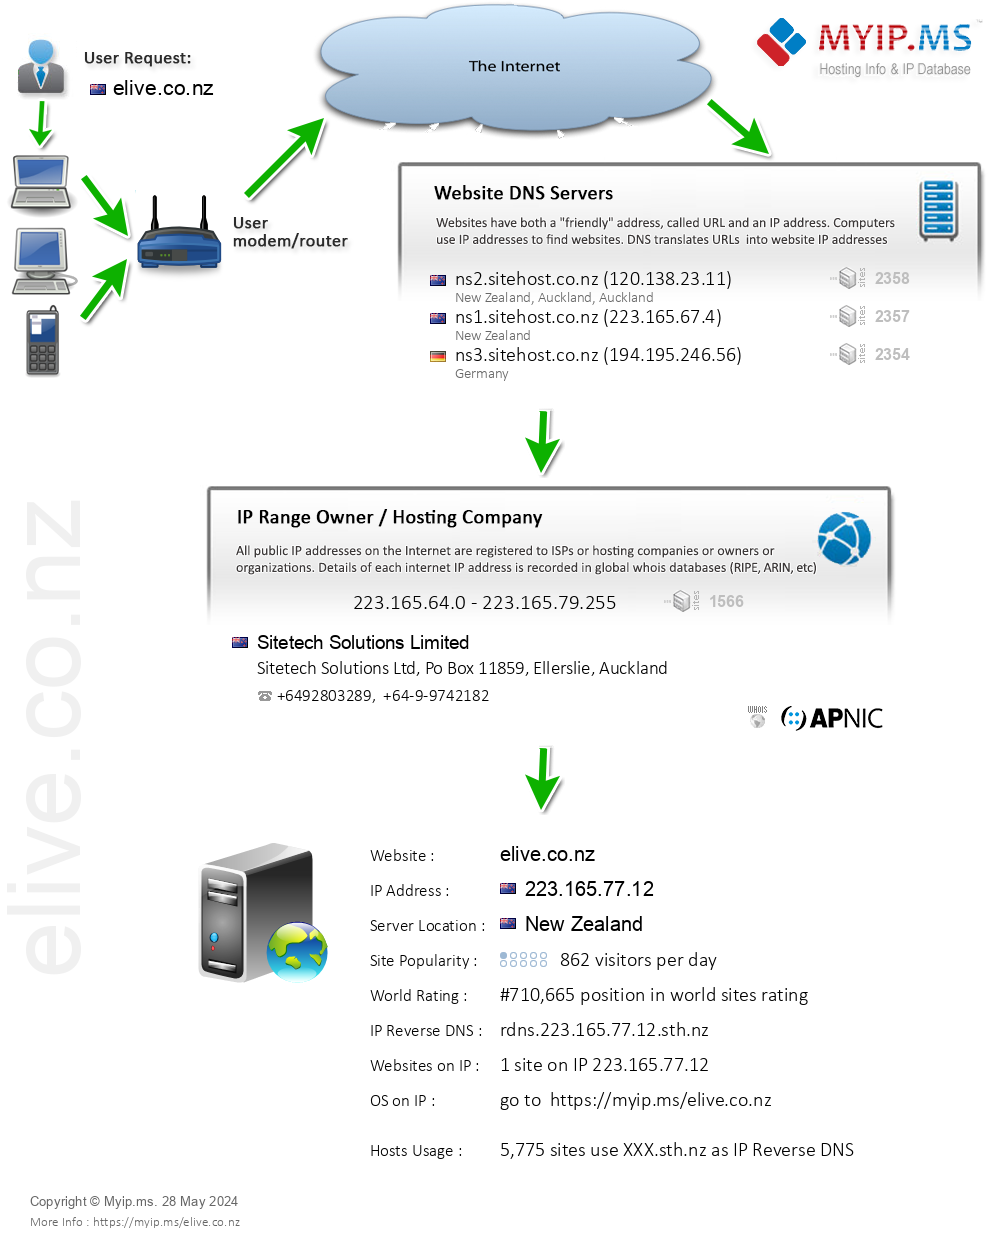 Elive.co.nz - Website Hosting Visual IP Diagram